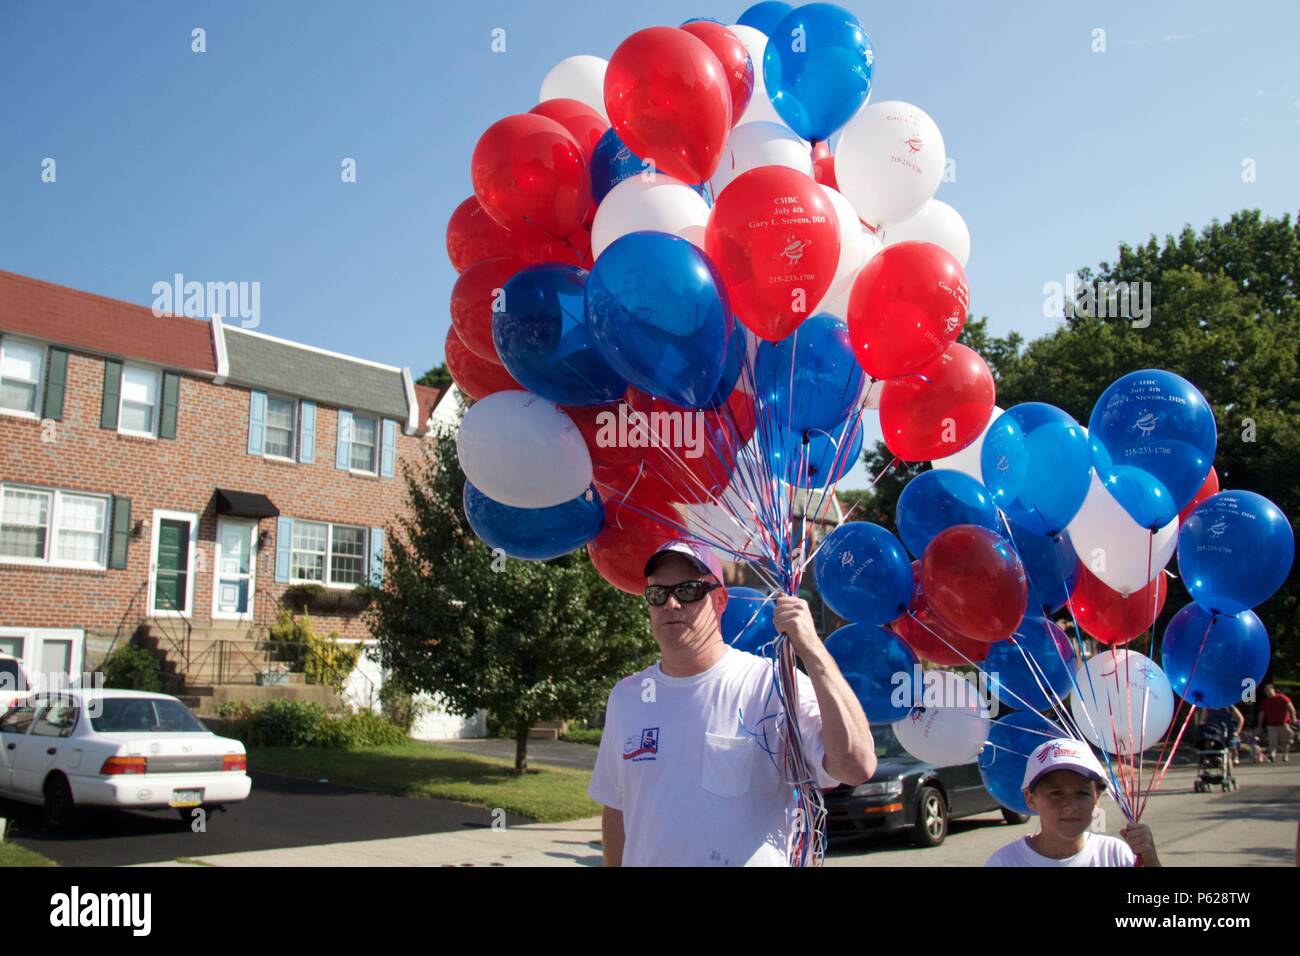 Philadelphia, PA, USA - Juli 4, 2012: Ballons sind in der Feier der amerikanischen Unabhängigkeit in Philadelphia's Chestnut Hill Nachbarschaft gegeben Stockfoto